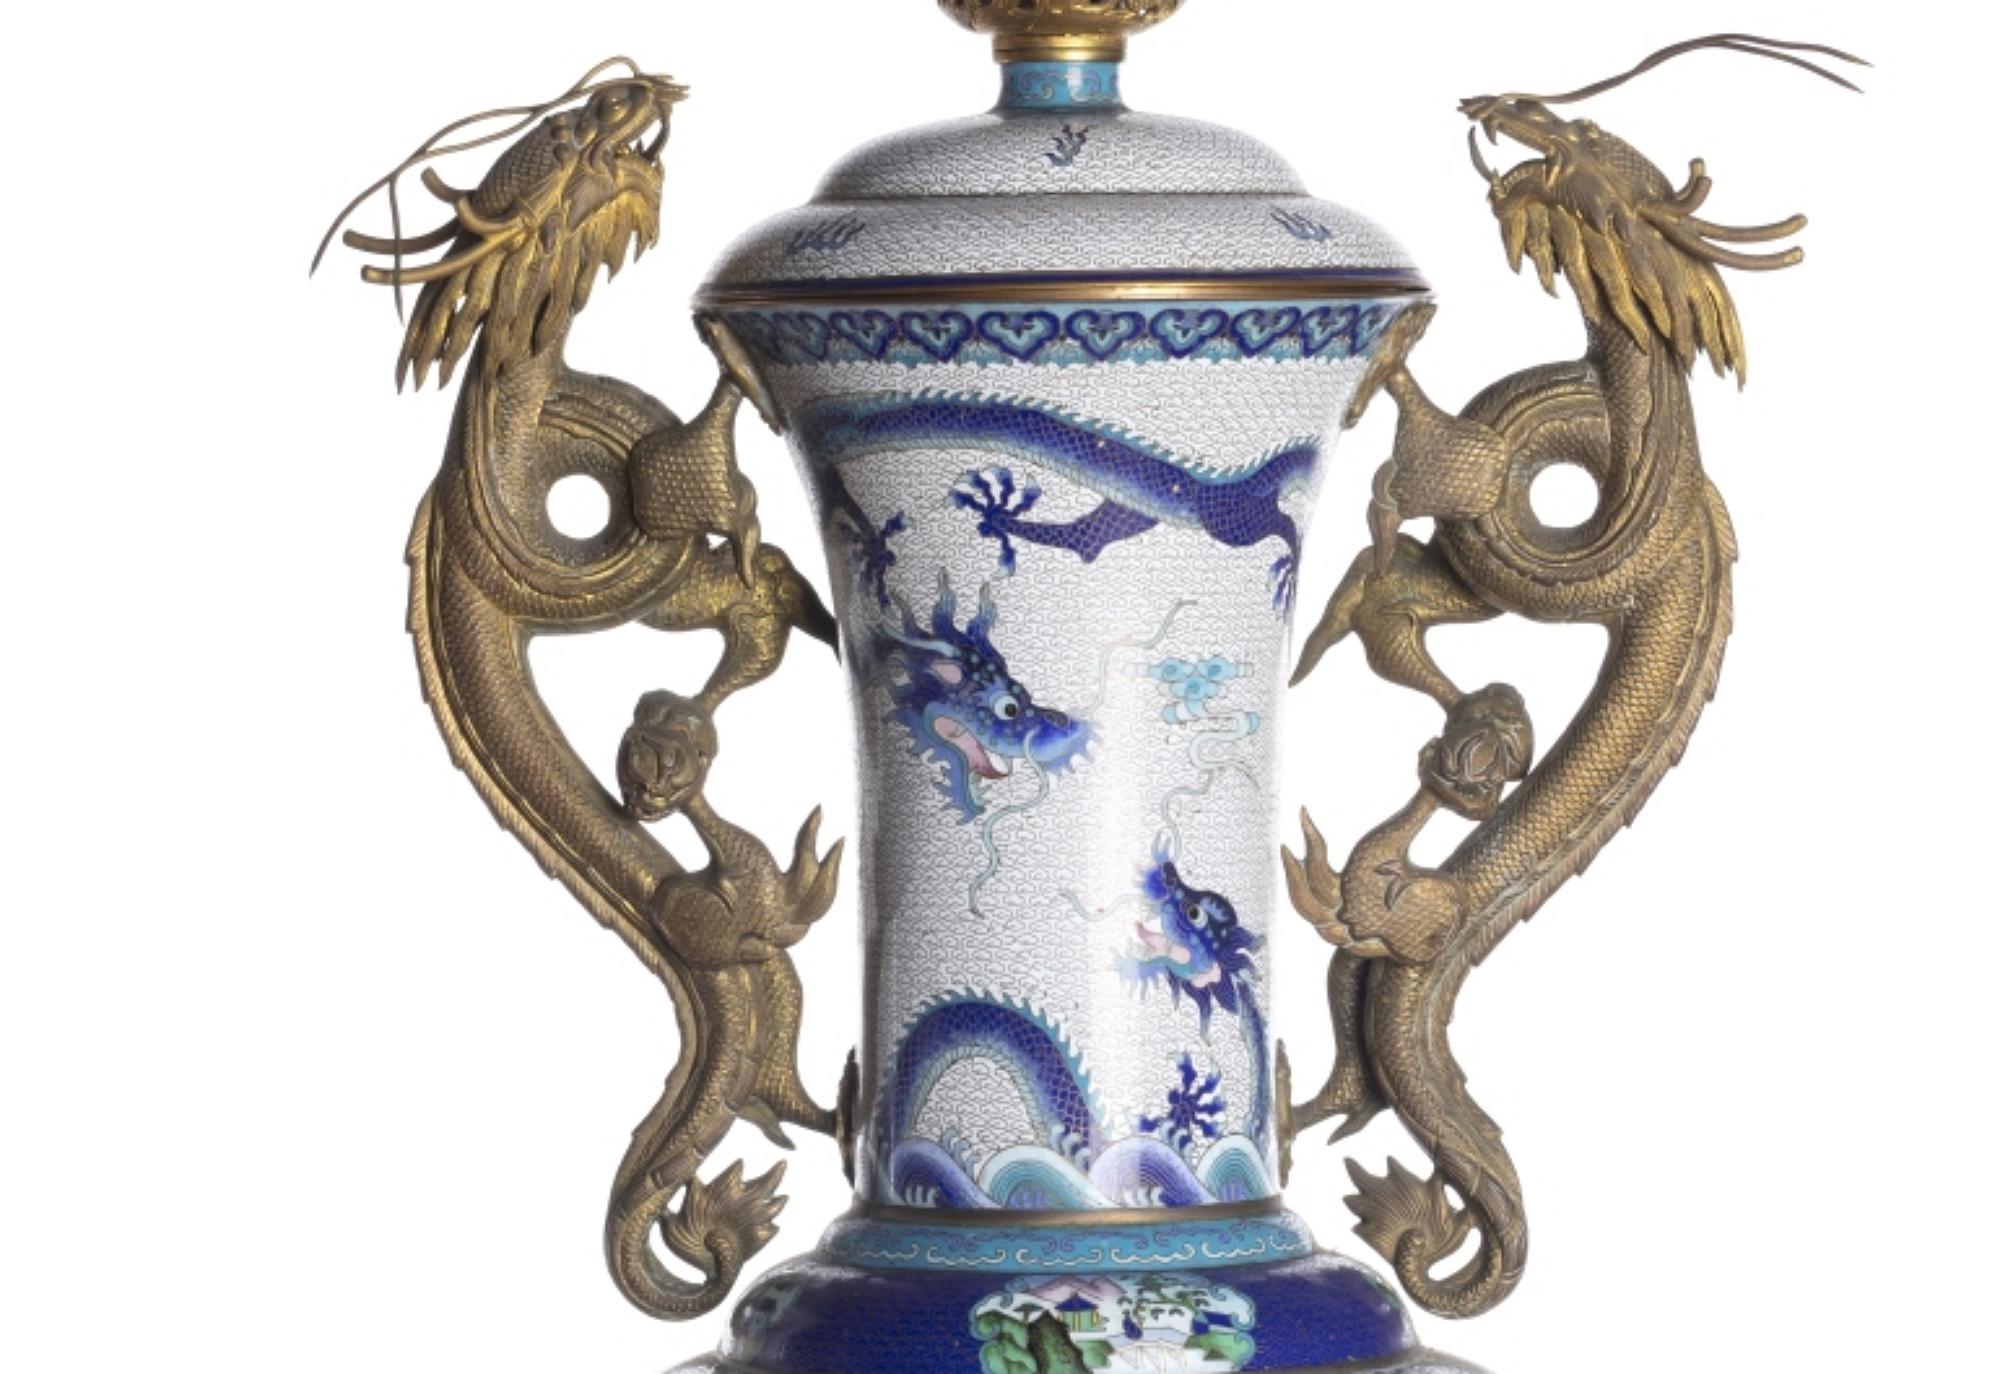 TOPF MIT DECKEL

Chinesisch
 19. Jahrhundert,
 in Cloisonné-Metall, Dekoration in Blautönen und Polychromie mit Drachen und drachenförmigen Griffen in Reliefbronze. 
Sockel aus Holz. 
Höhe: (Vase) 61 cm. Höhe: (insgesamt) 70 cm.
sehr guter